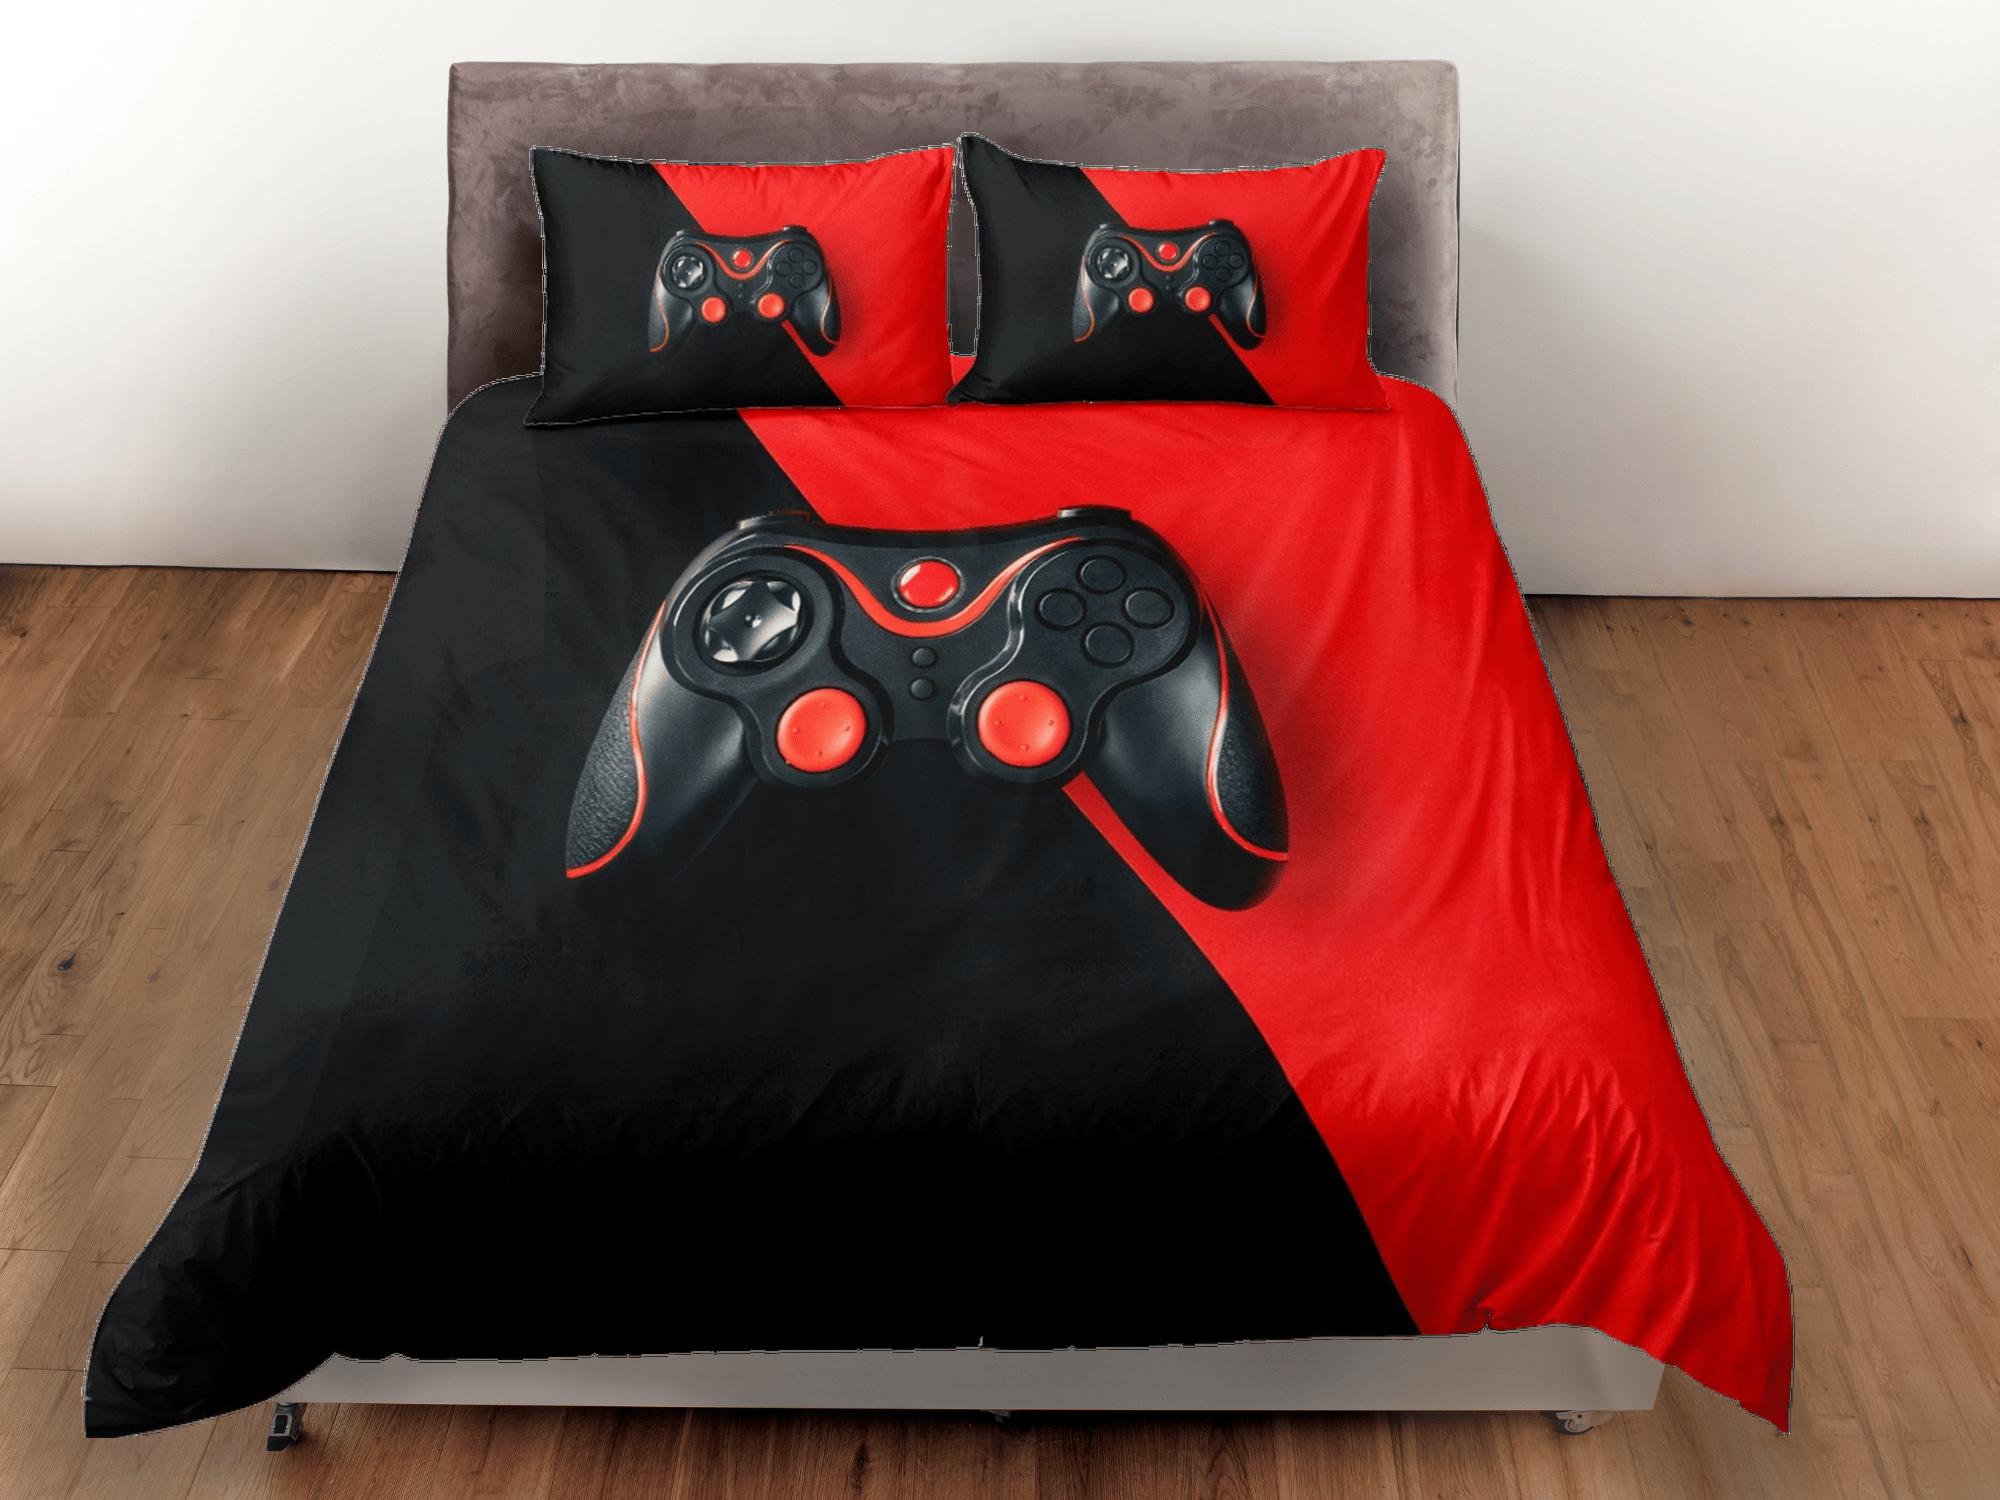 daintyduvet Black and red gamer bedding duvet cover, video gamer boyfriend gift bedding set full king queen twin, boys bedroom, college dorm bedding